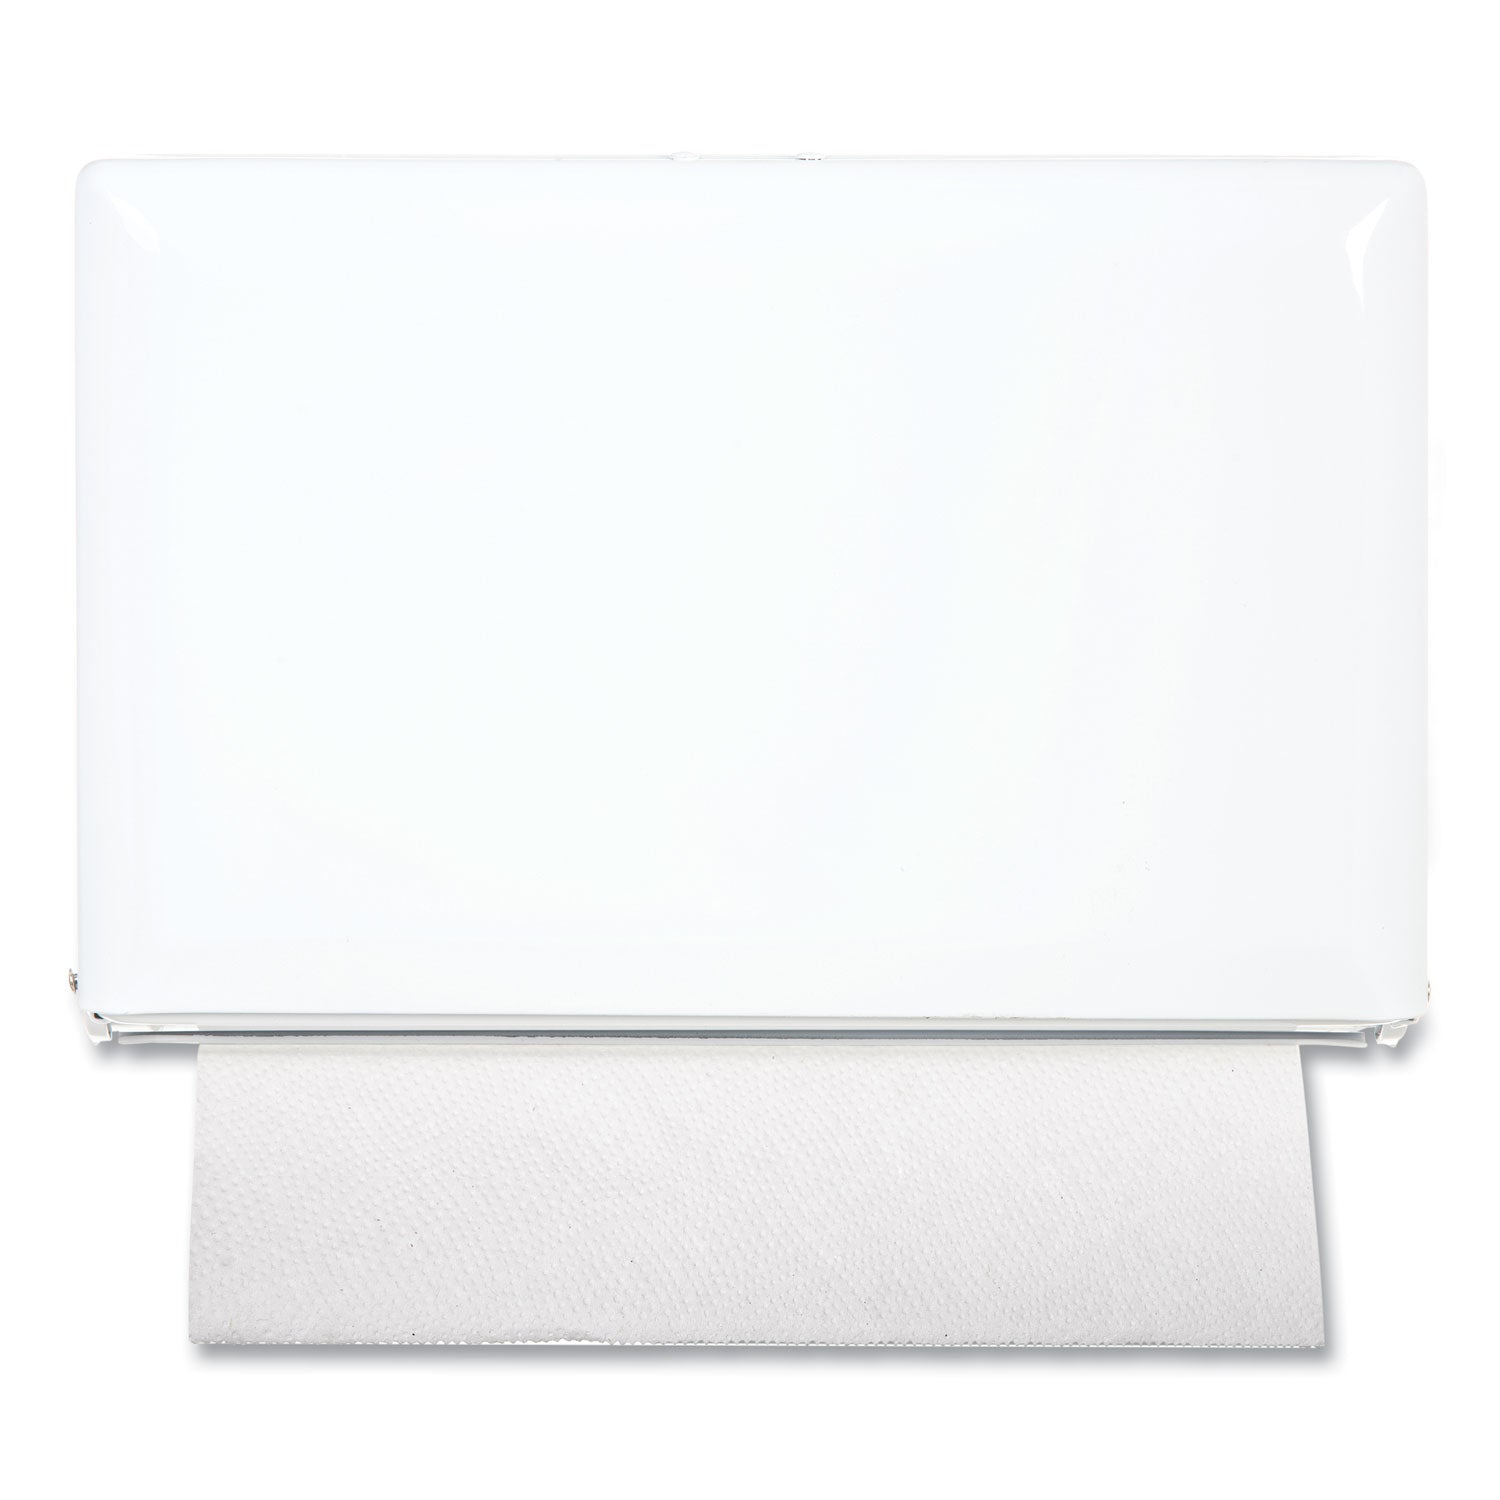 Singlefold Paper Towel Dispenser, 10.75 x 6 x 7.5, White - 